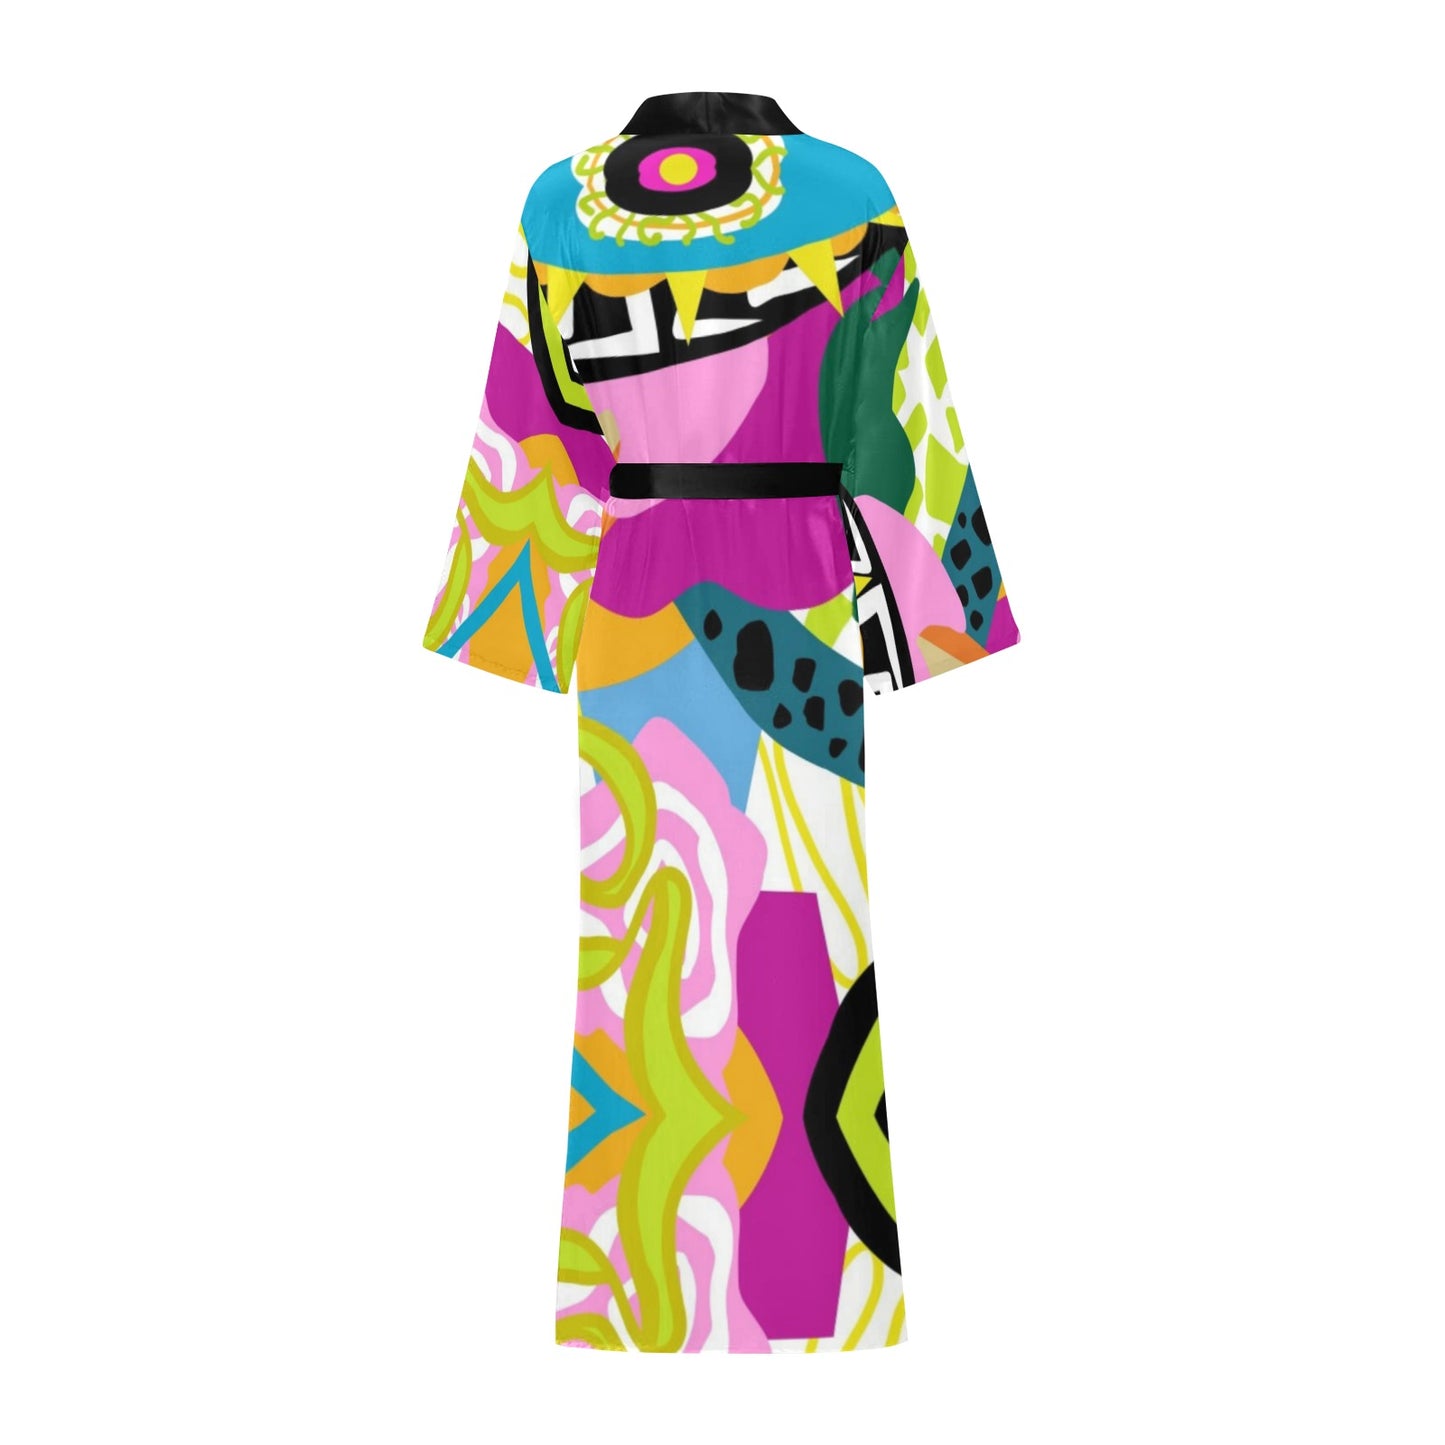 Vee - Long Kimono Robe